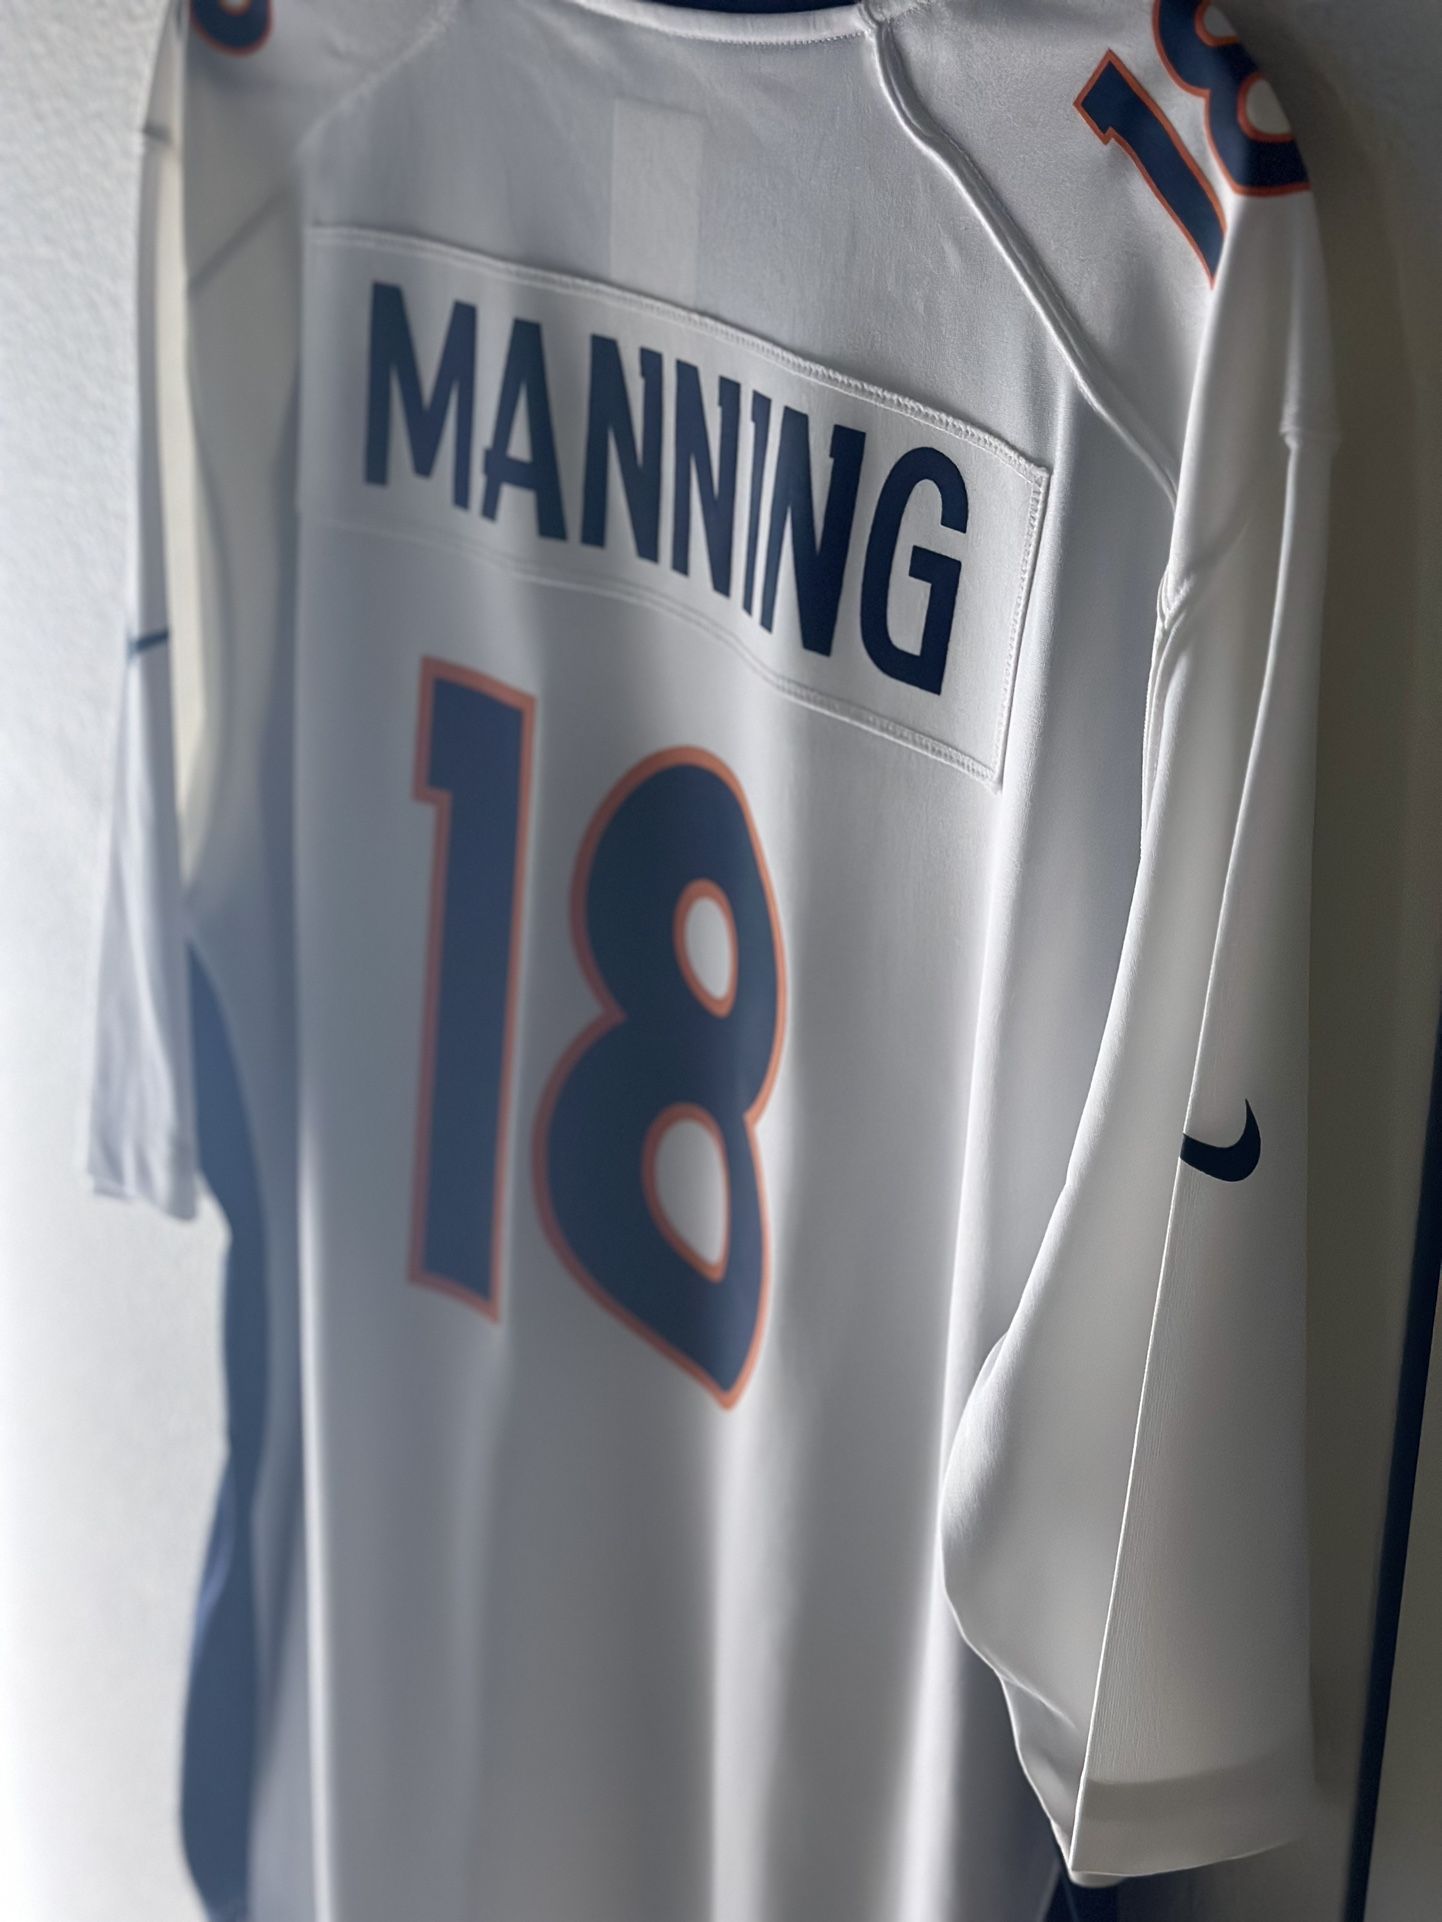 Peyton Manning Broncos Jersey 